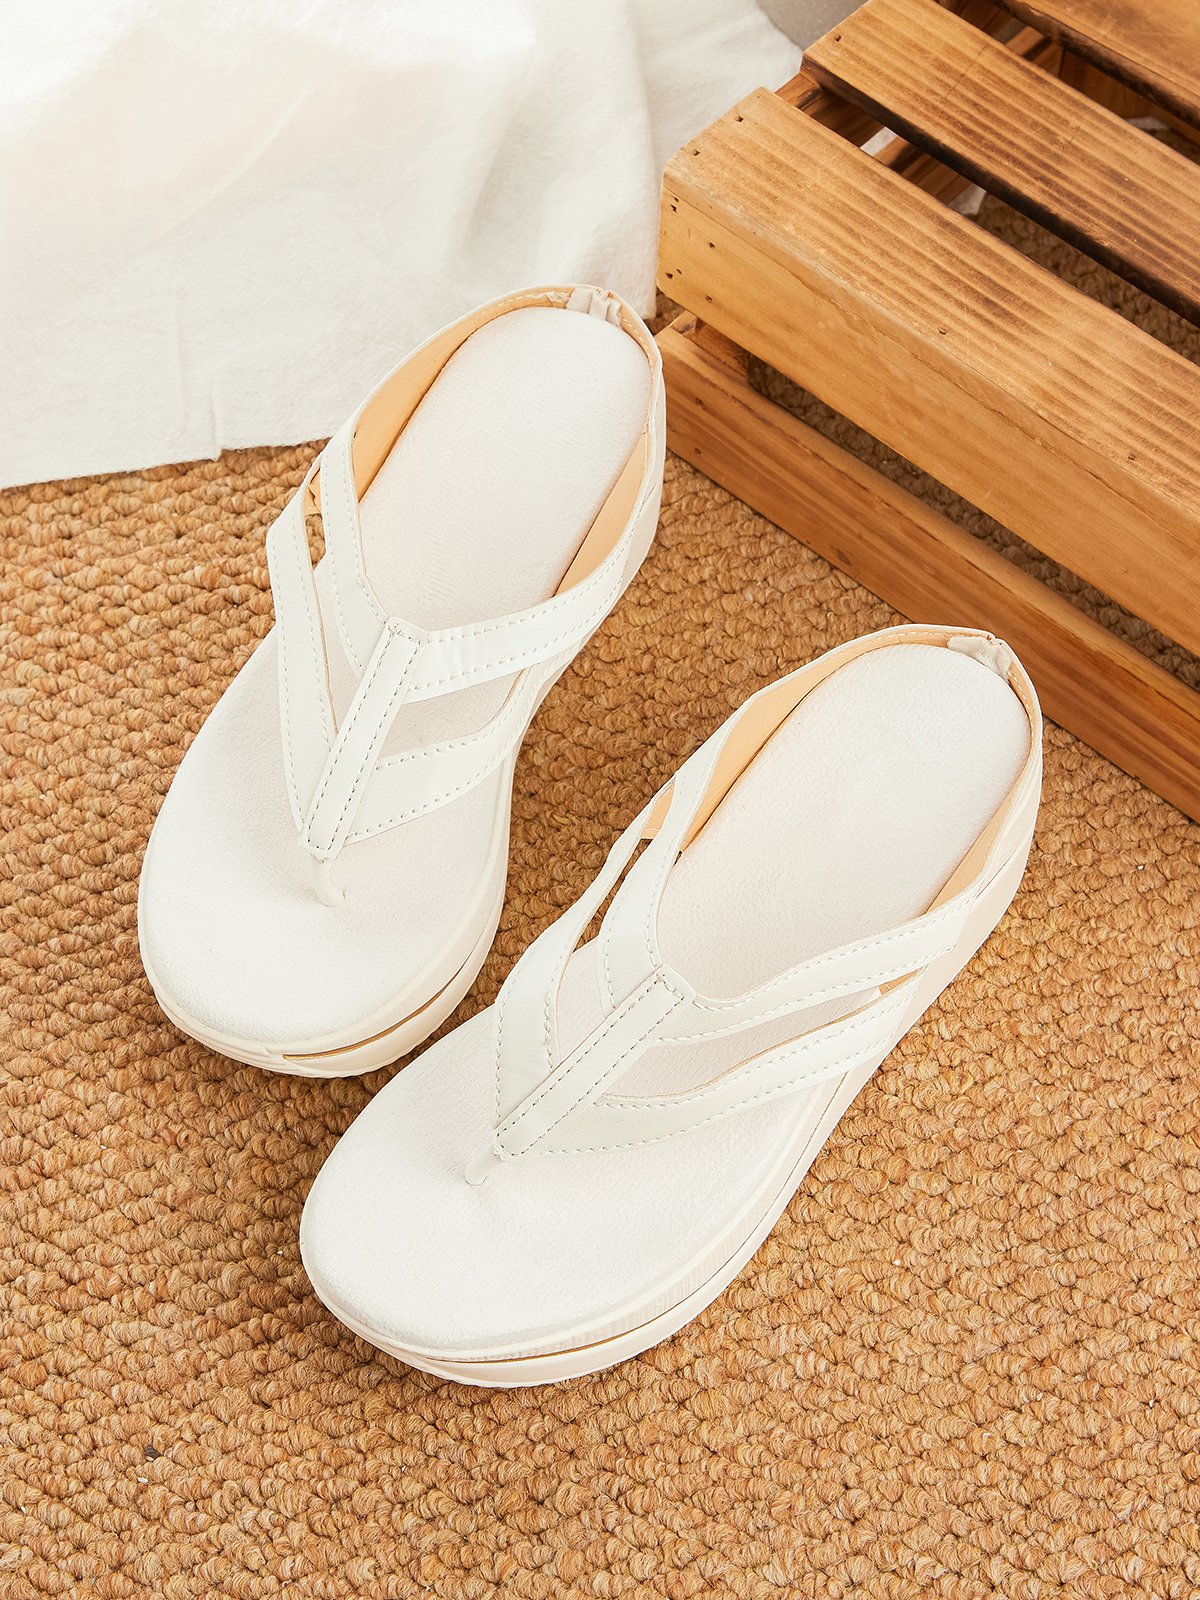 Summer Wedge Heel Sandals & Slippers